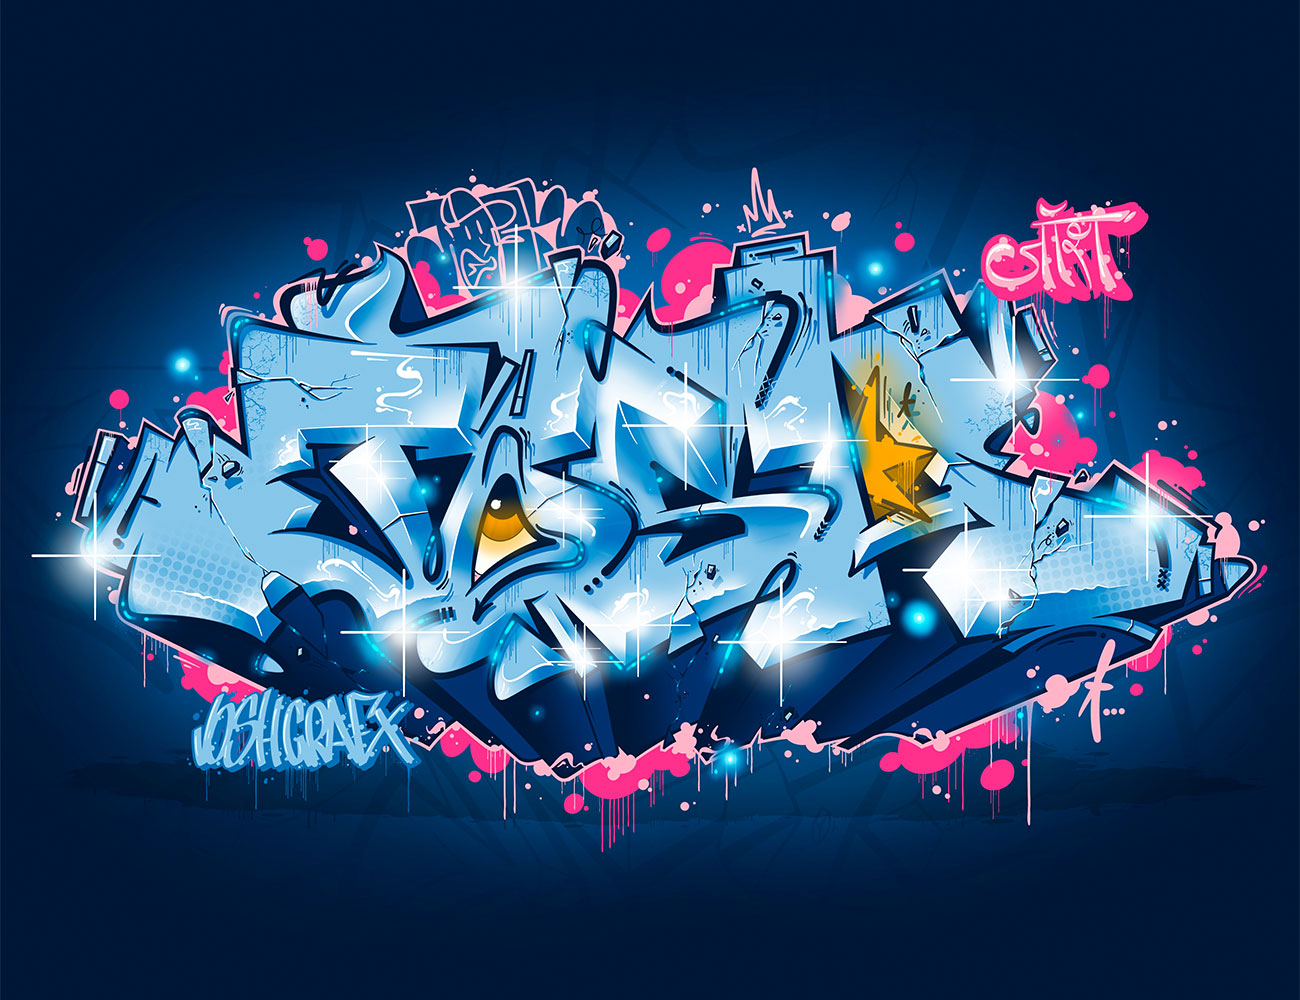 pieza de graffiti digital de Josh Grafx